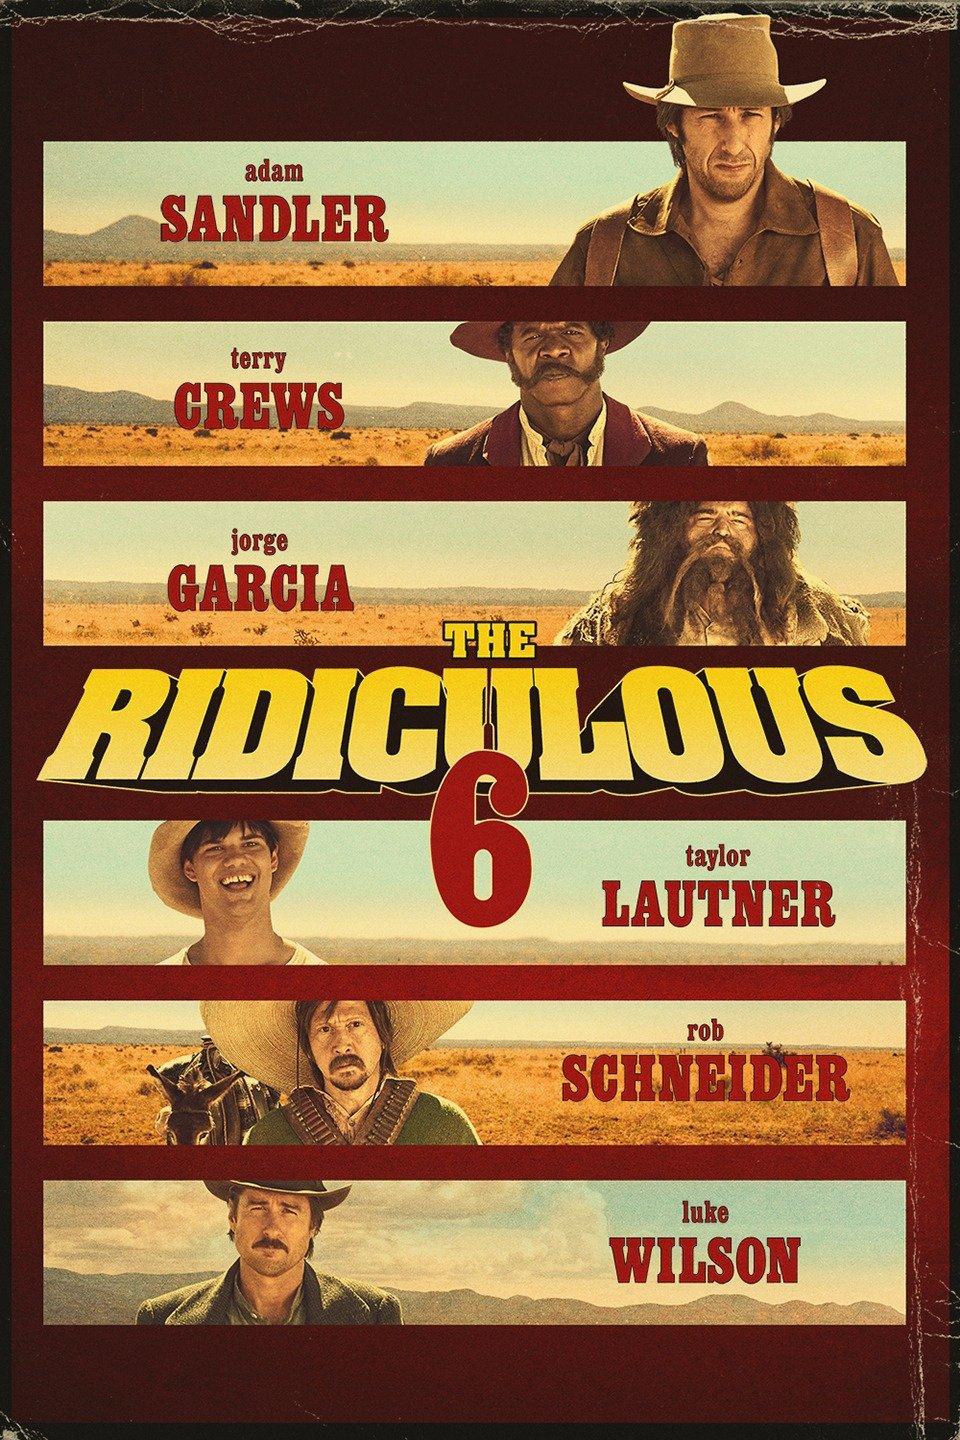 فيلم The Ridiculous 6 - روتن توماتيوز